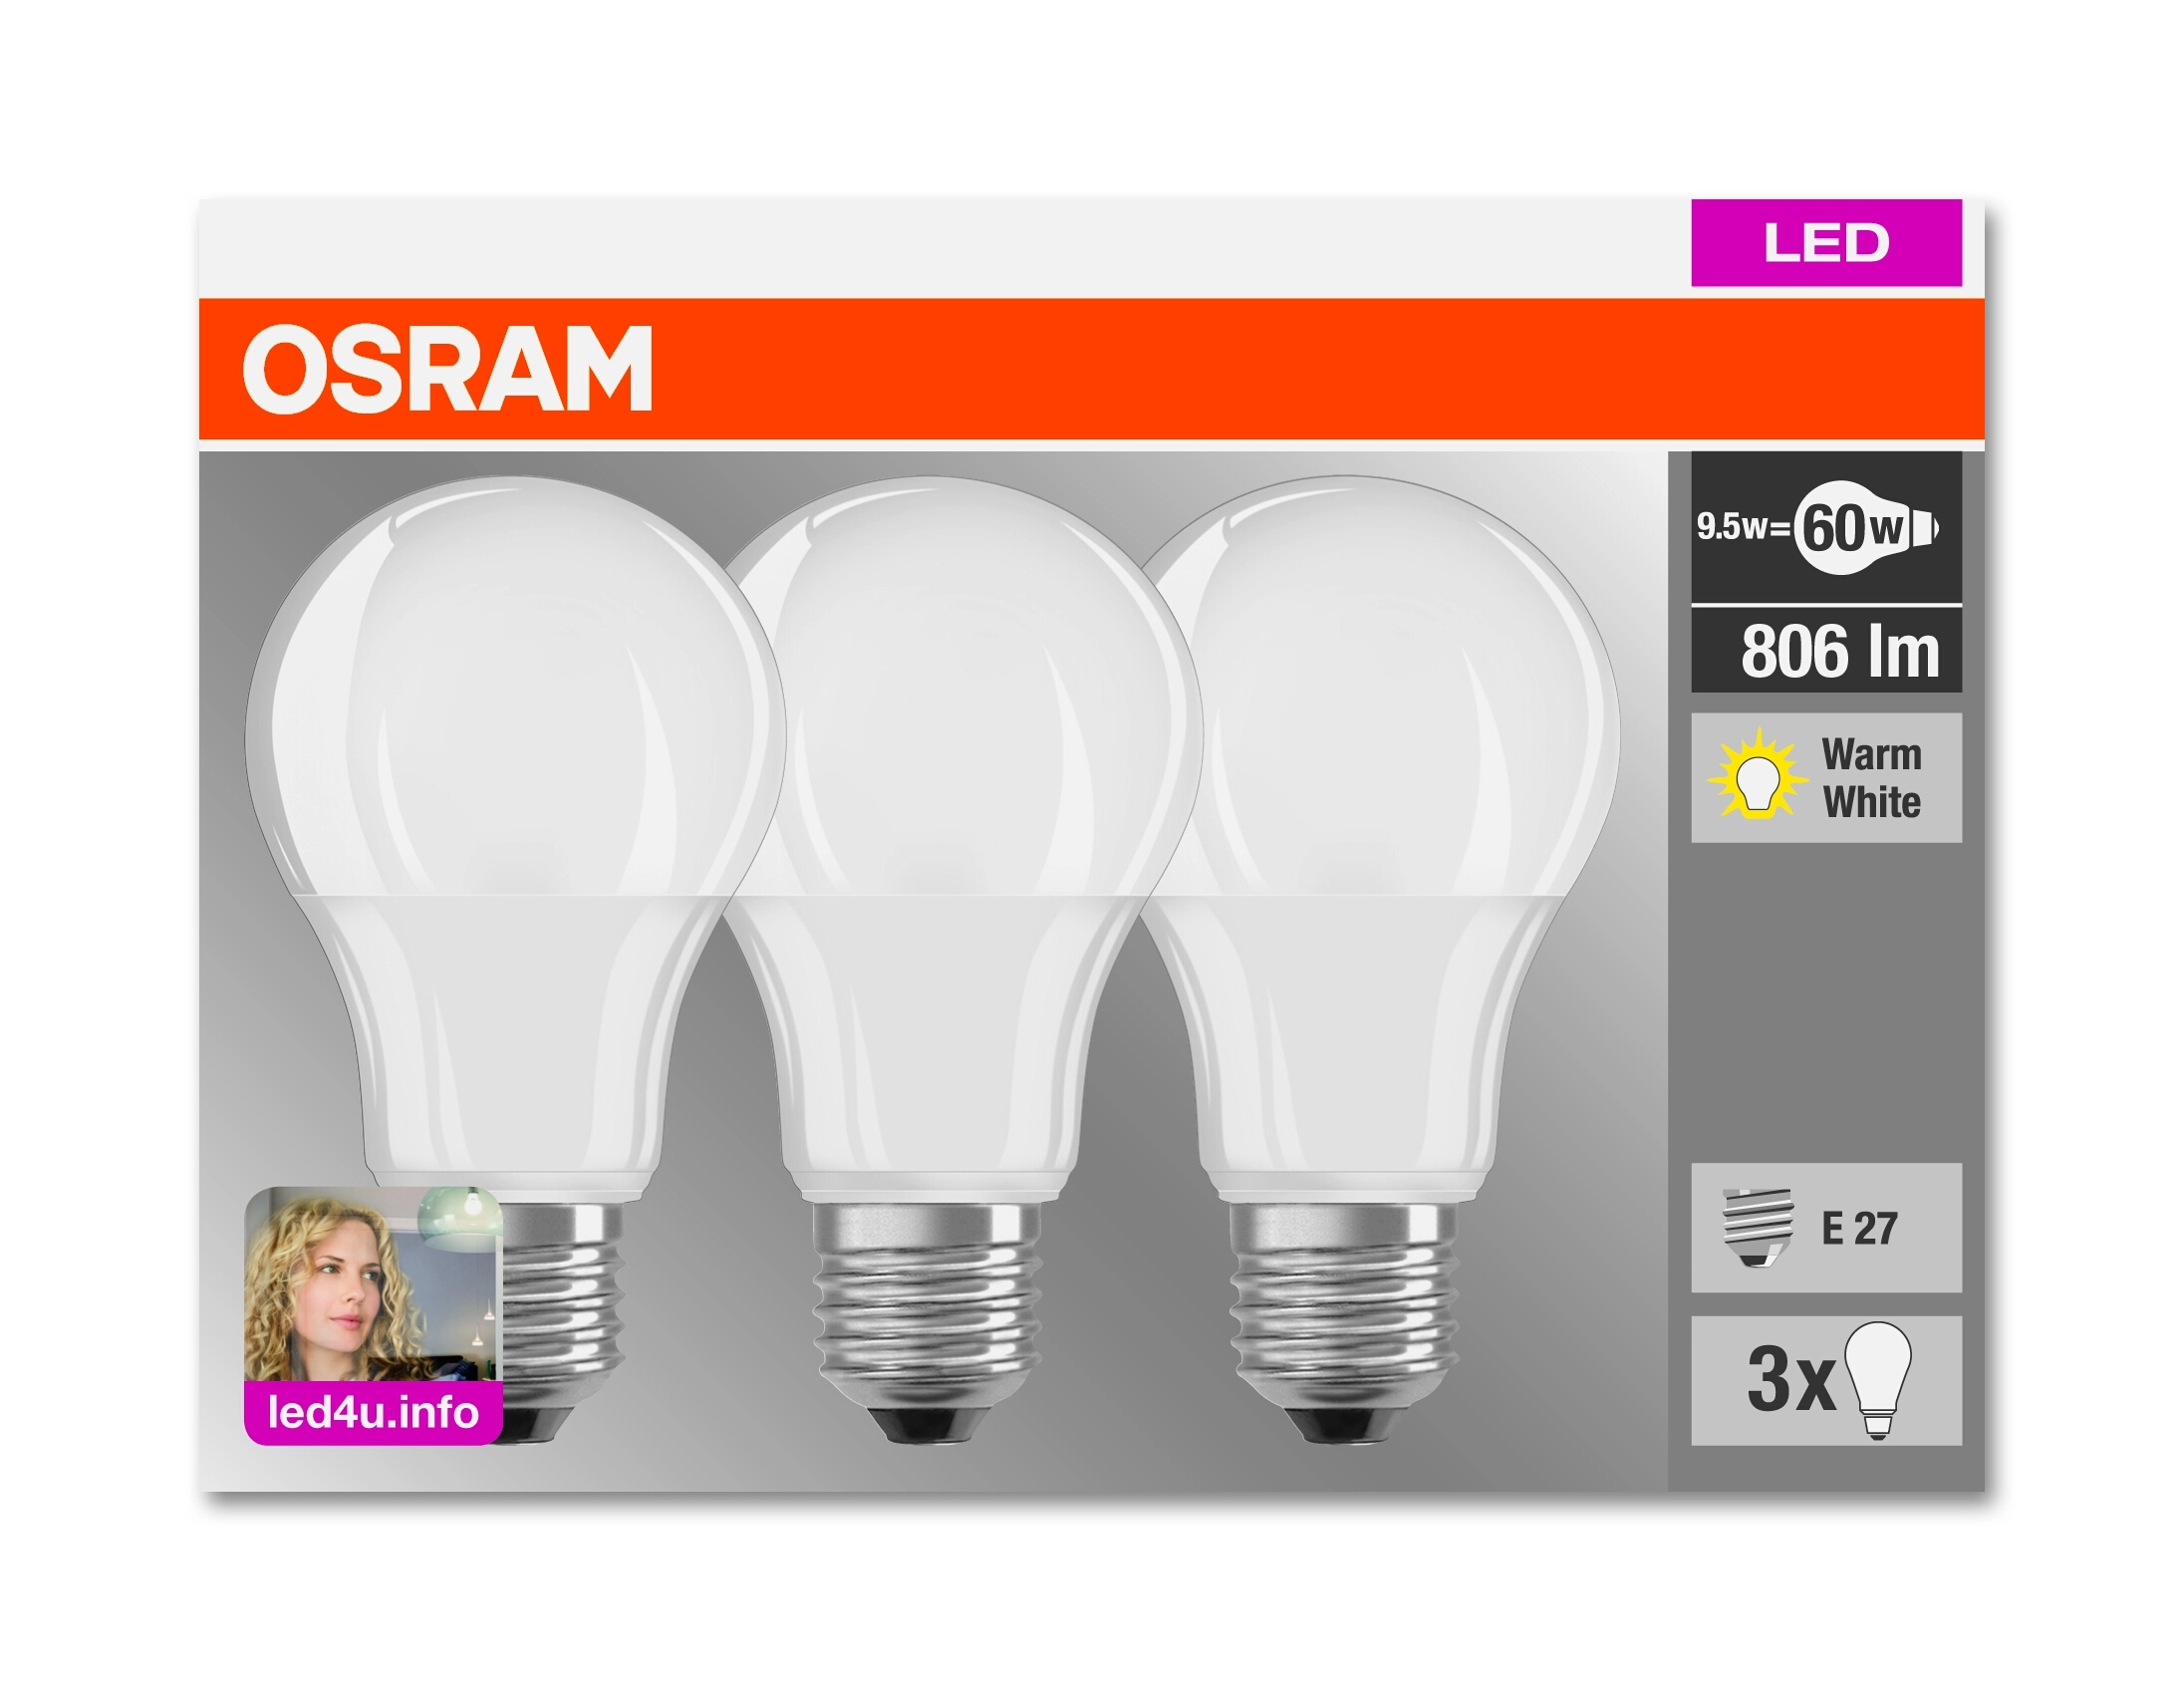 Osram Ampoule LED forme de goutte E27 Blanc chaud 60 W 806 lm